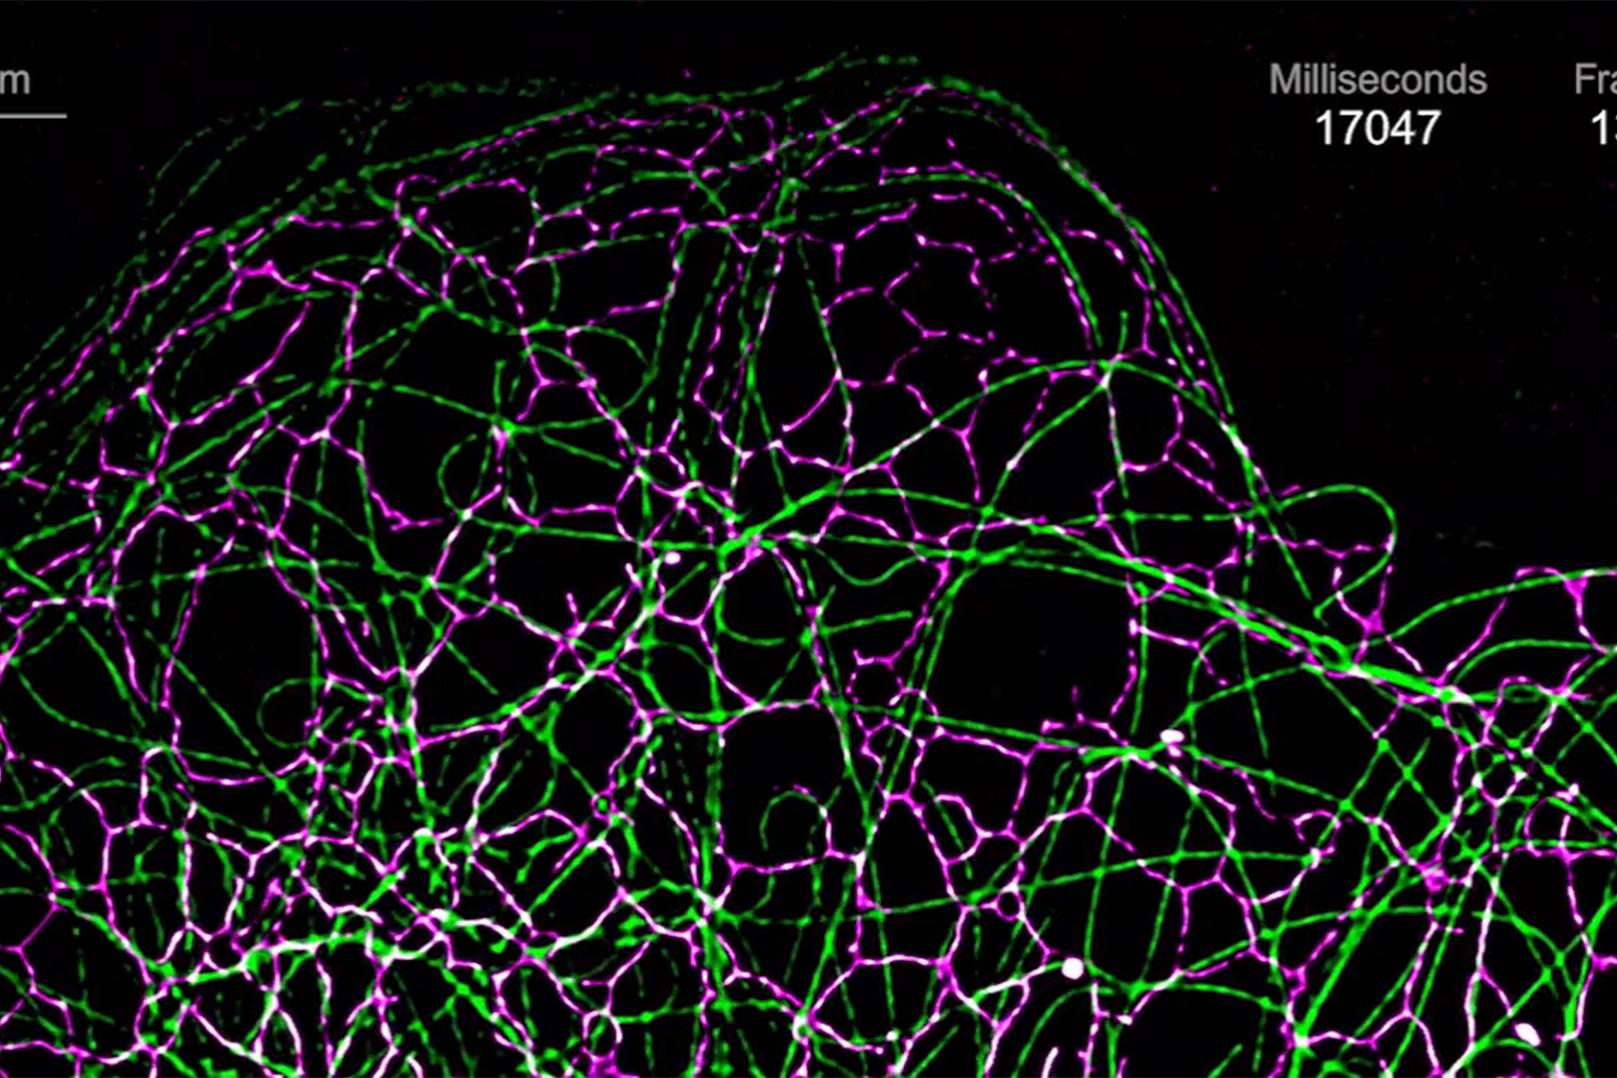 L'imagerie simultanée du réticulum endoplasmique (Calreticulin-tdTomato, magenta) et des microtubules (EMTB-3xGFP, vert) dans une cellule COS-7 révèle une interaction très dynamique de ces organites. Objectif : Plan-Apochromat 63× / 1.4 huile